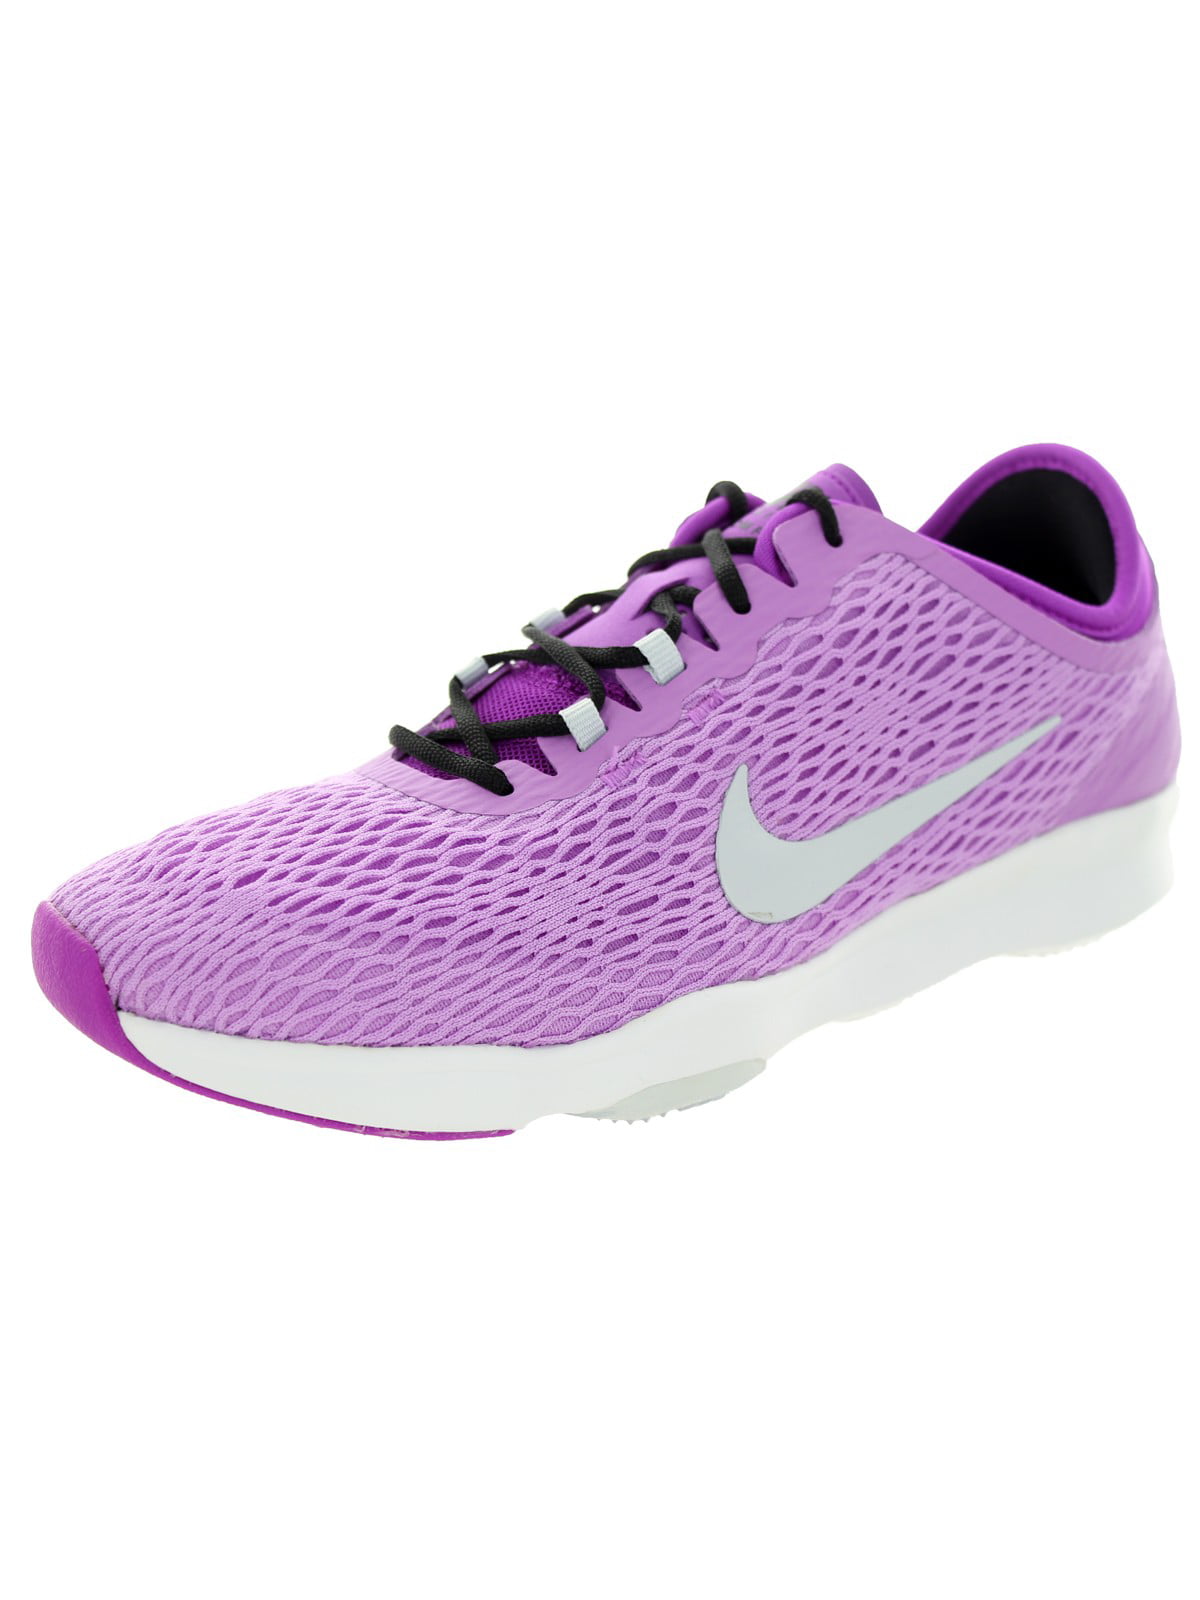 Nike Women's Zoom Fit Training Shoe 